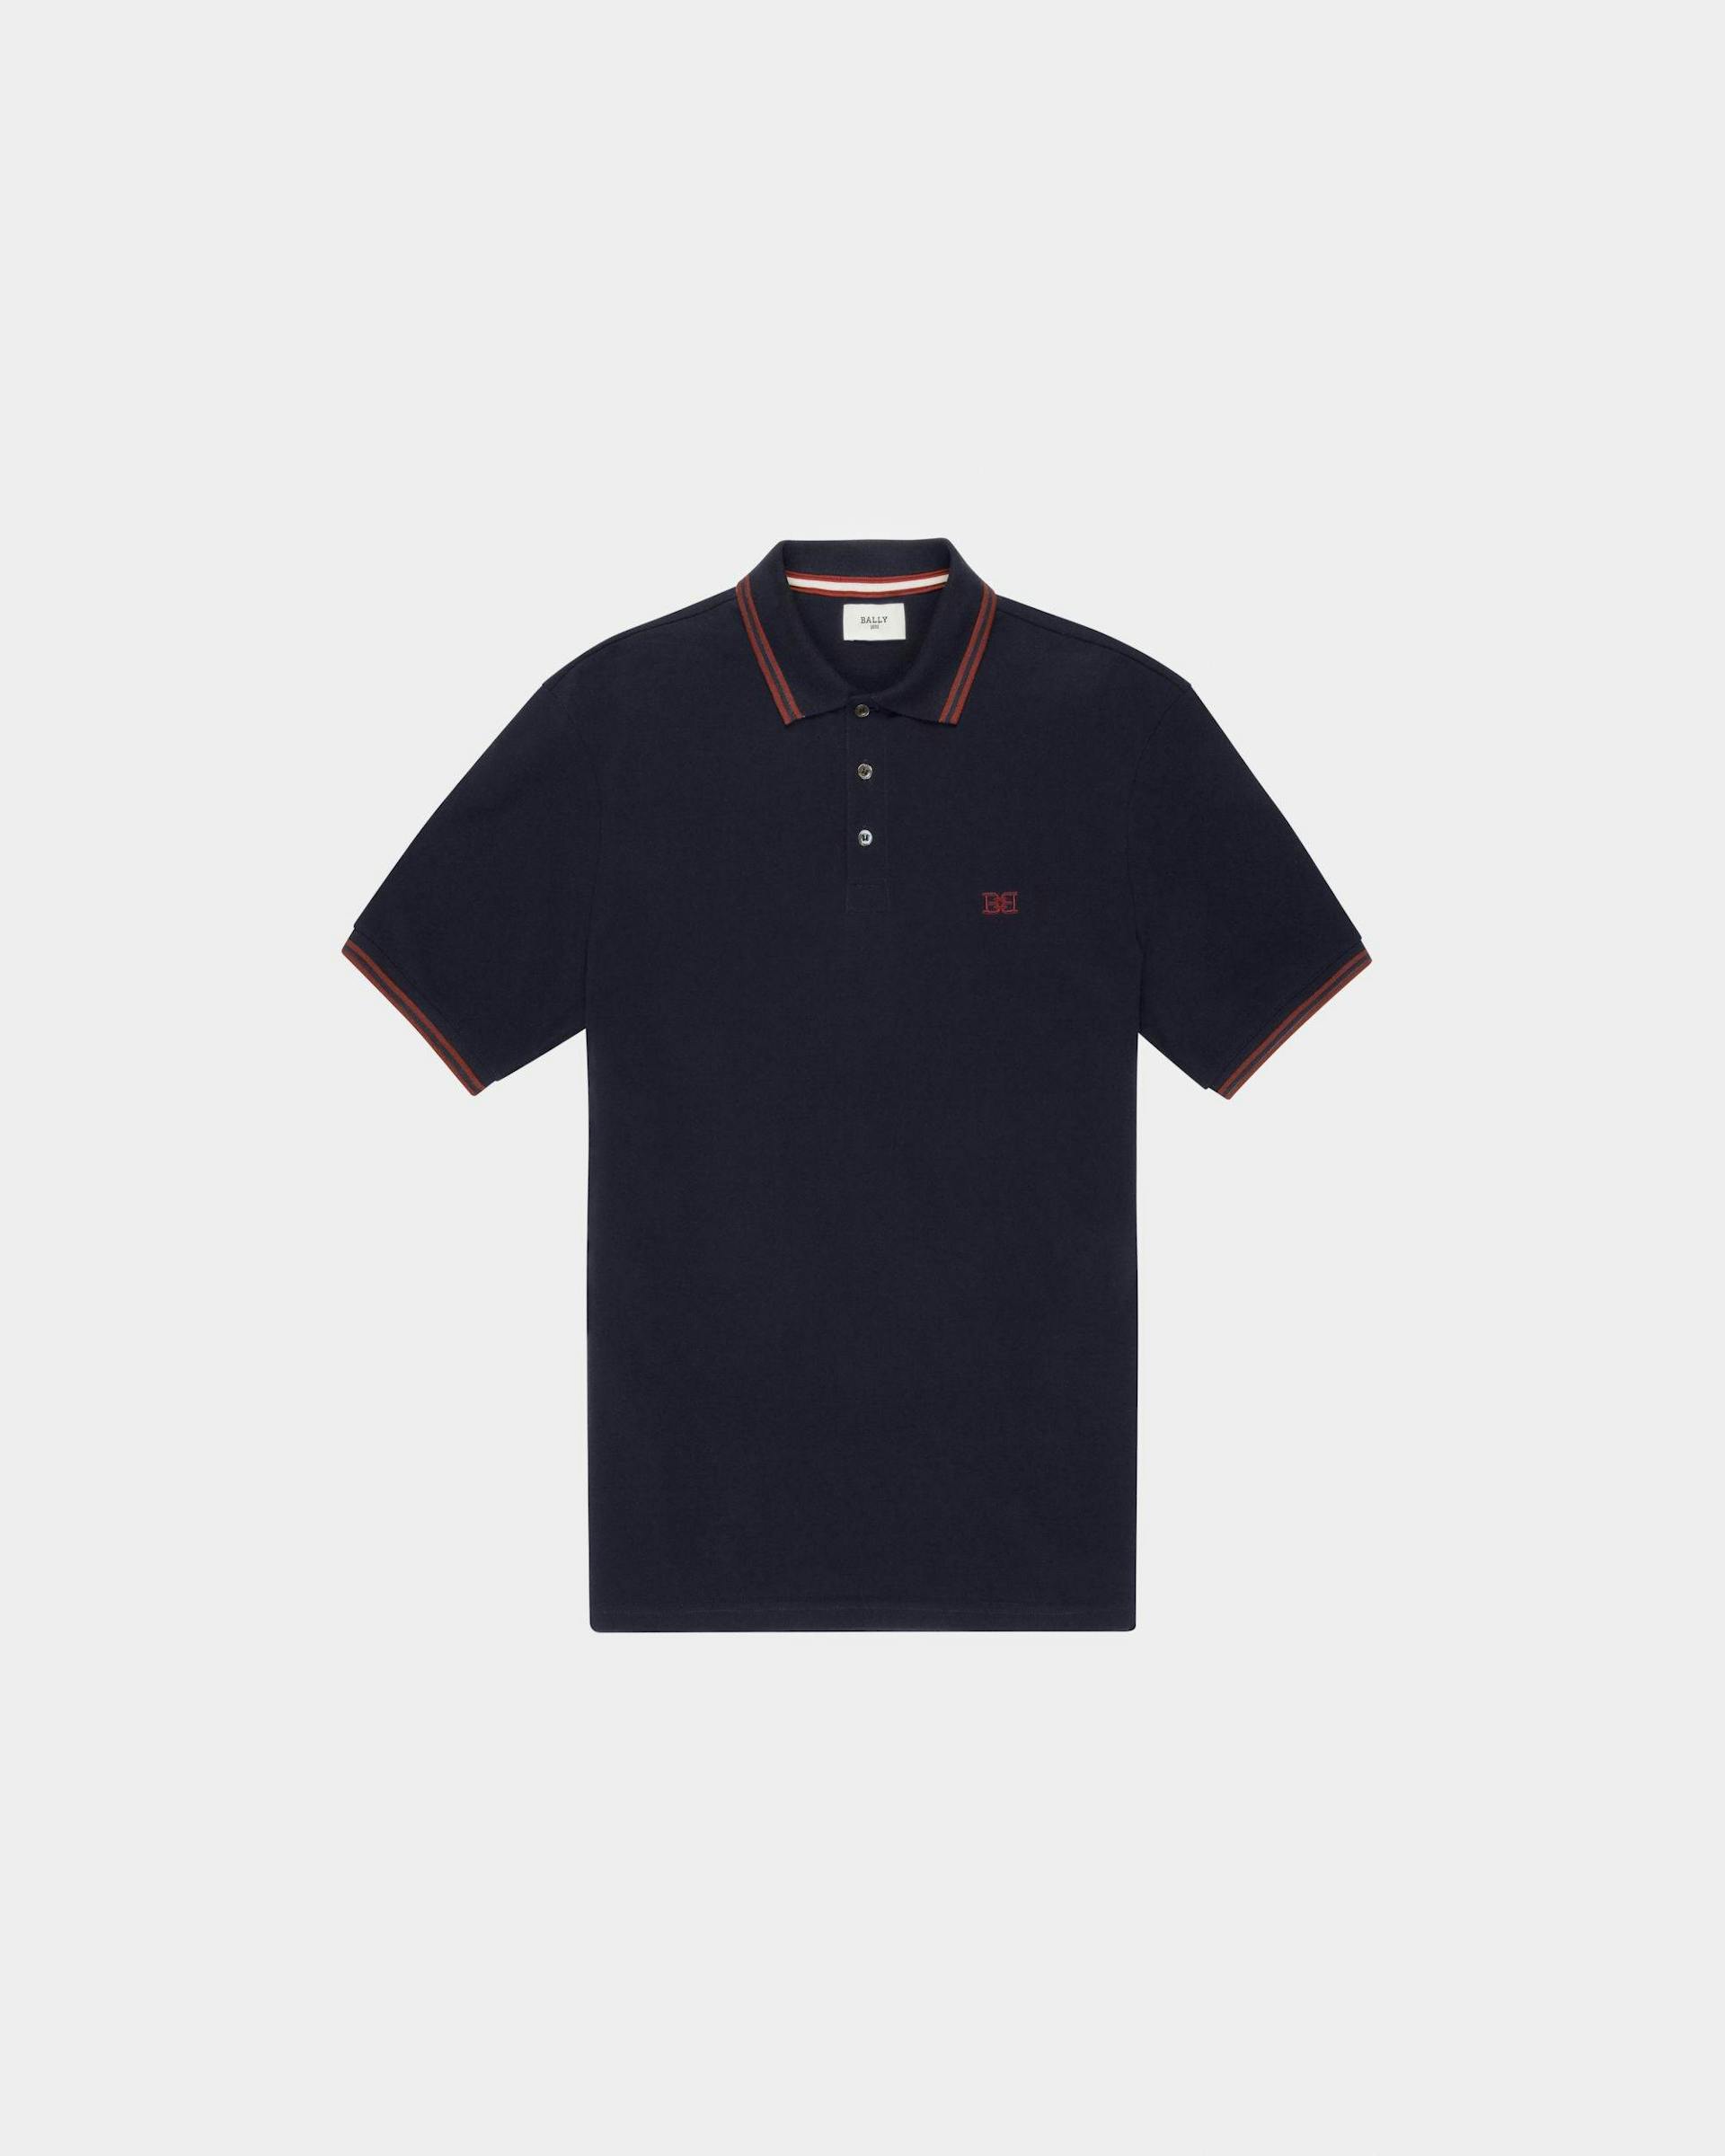 B-Chain Polo | Men's Polo Shirt | Navy Cotton | Bally